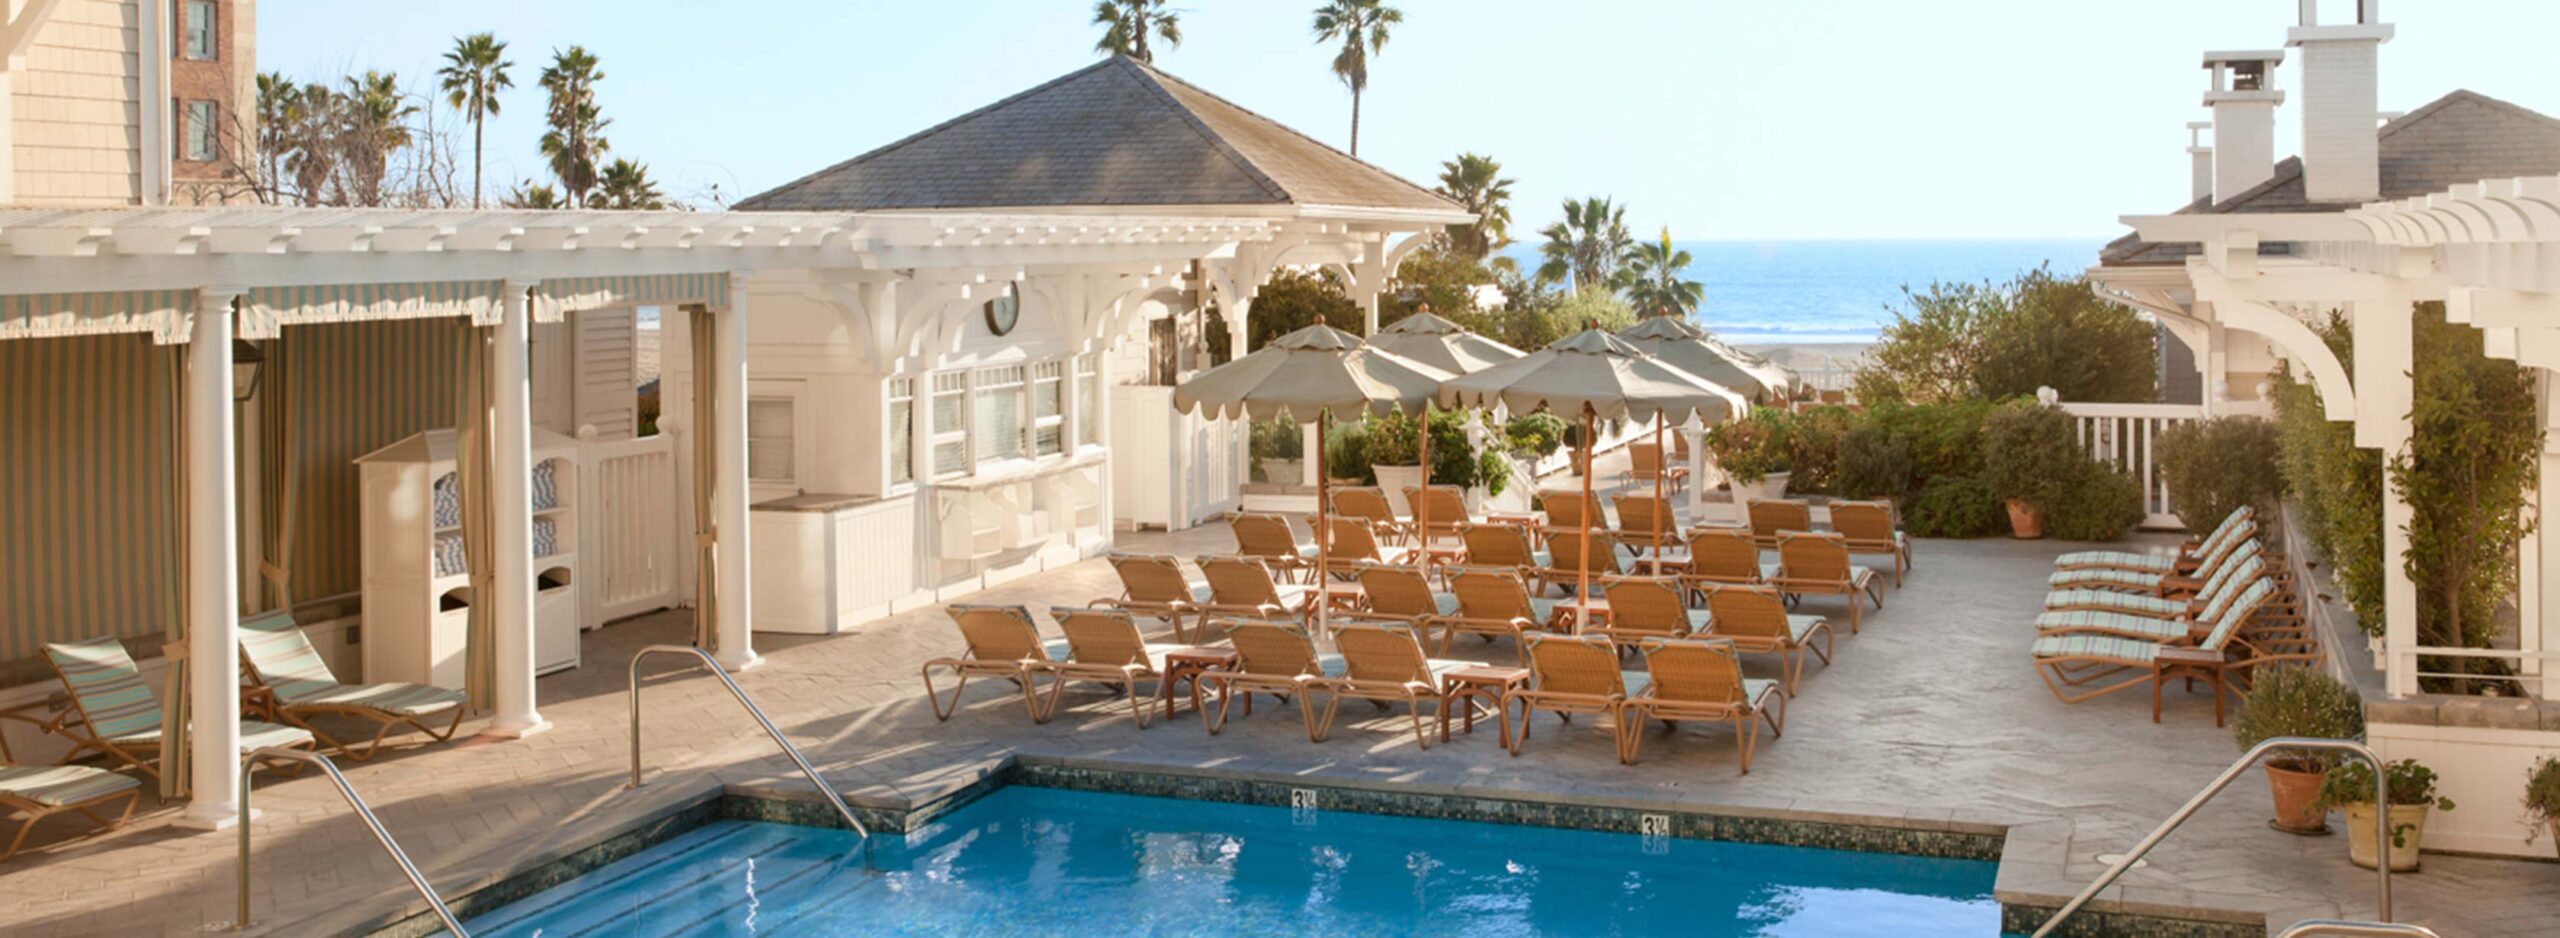 Shutters Beachfront Resort Hotel